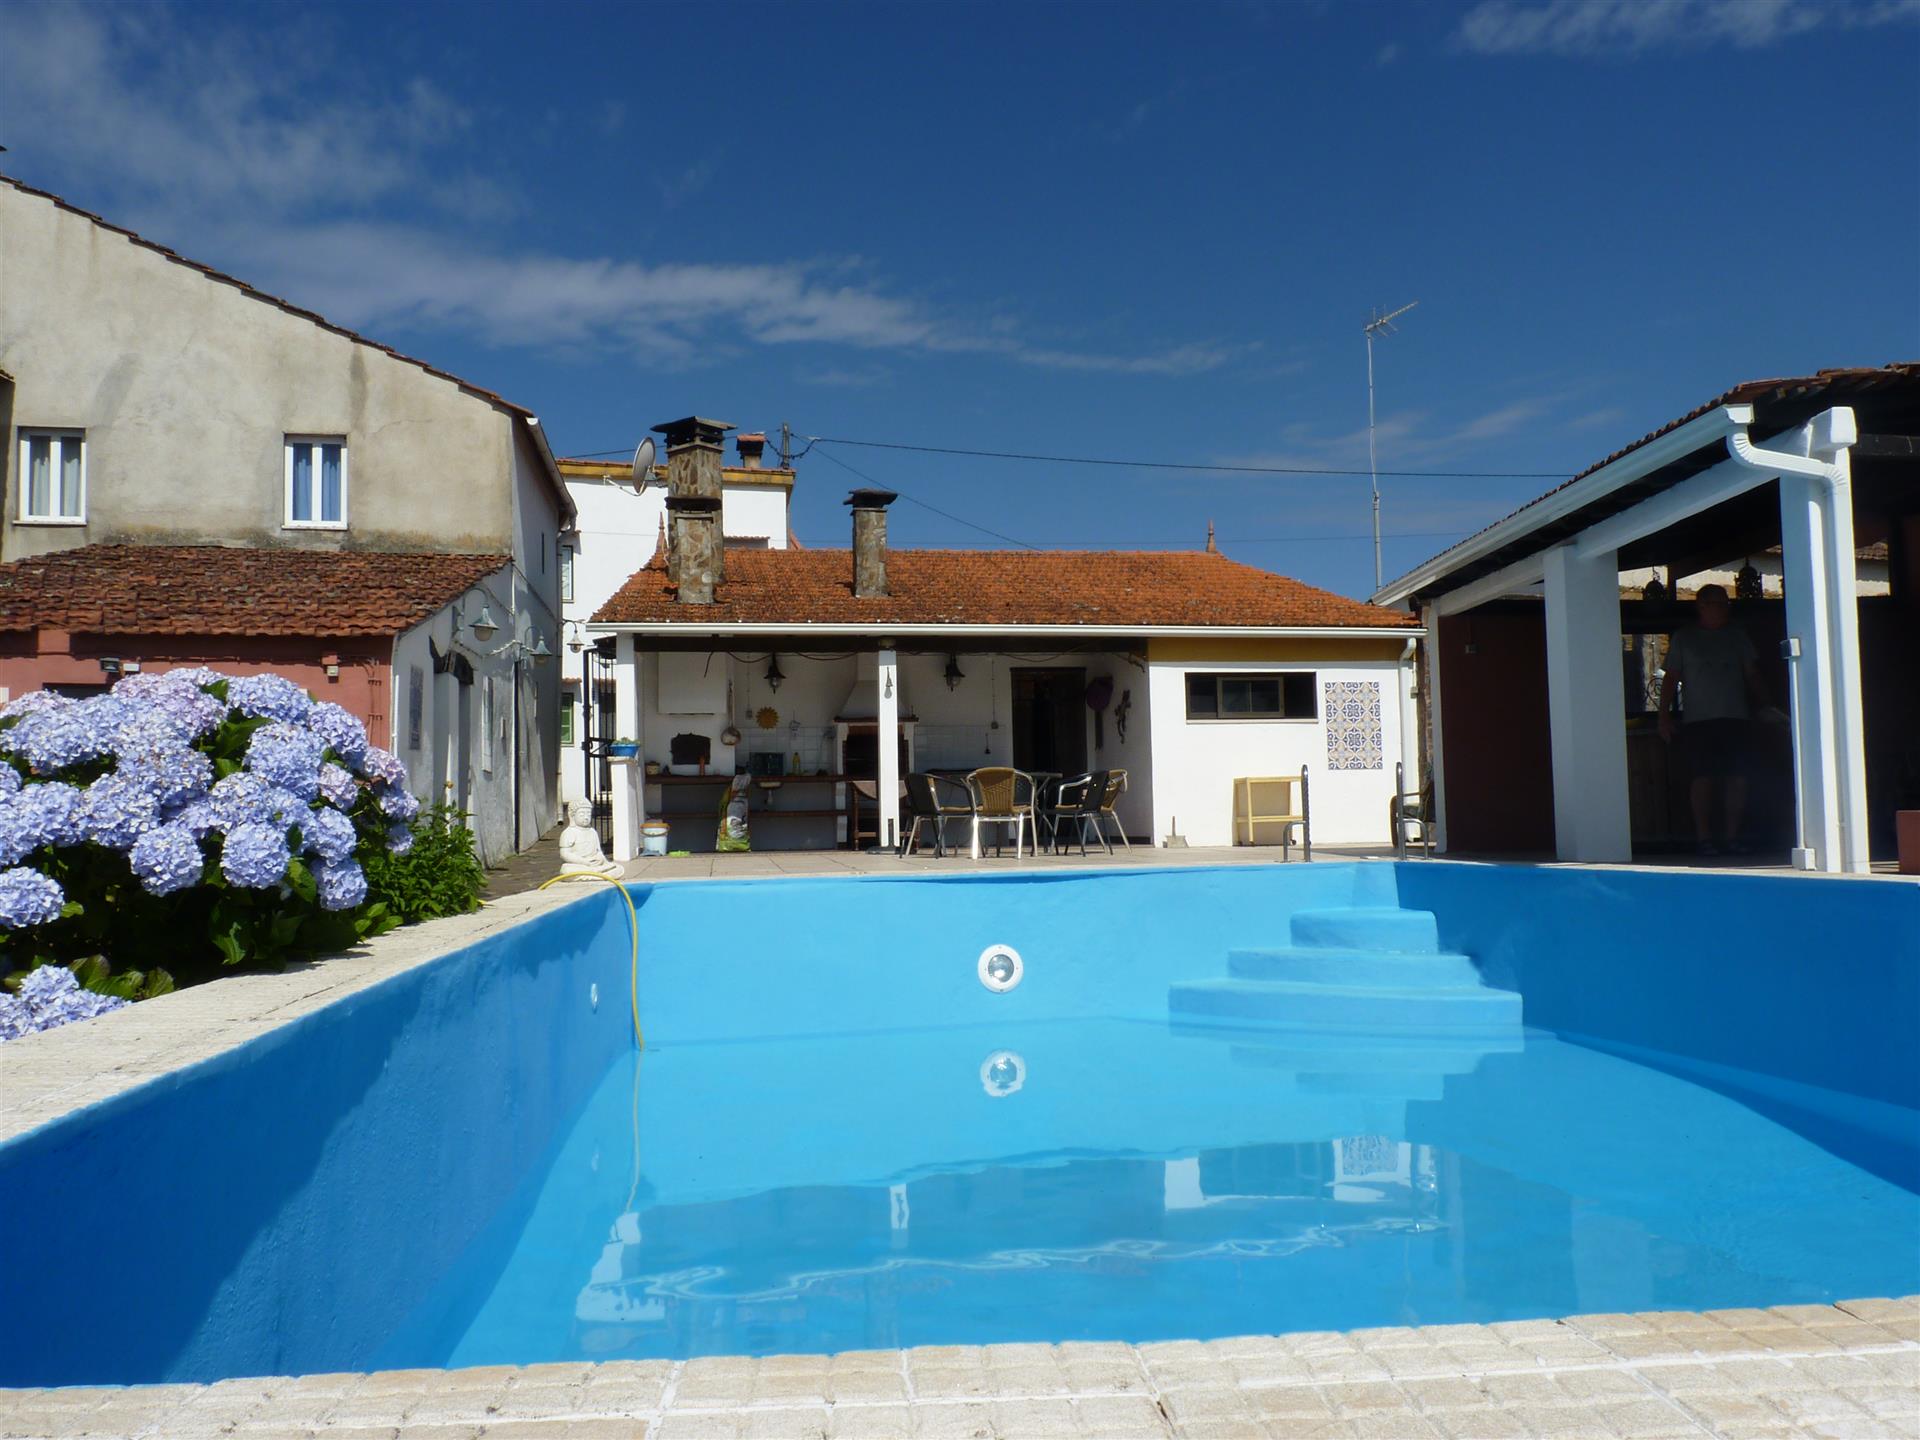 Maisons et dépendances, avec piscine et jardin, près de Vila Facaia, Pedrógão Grande